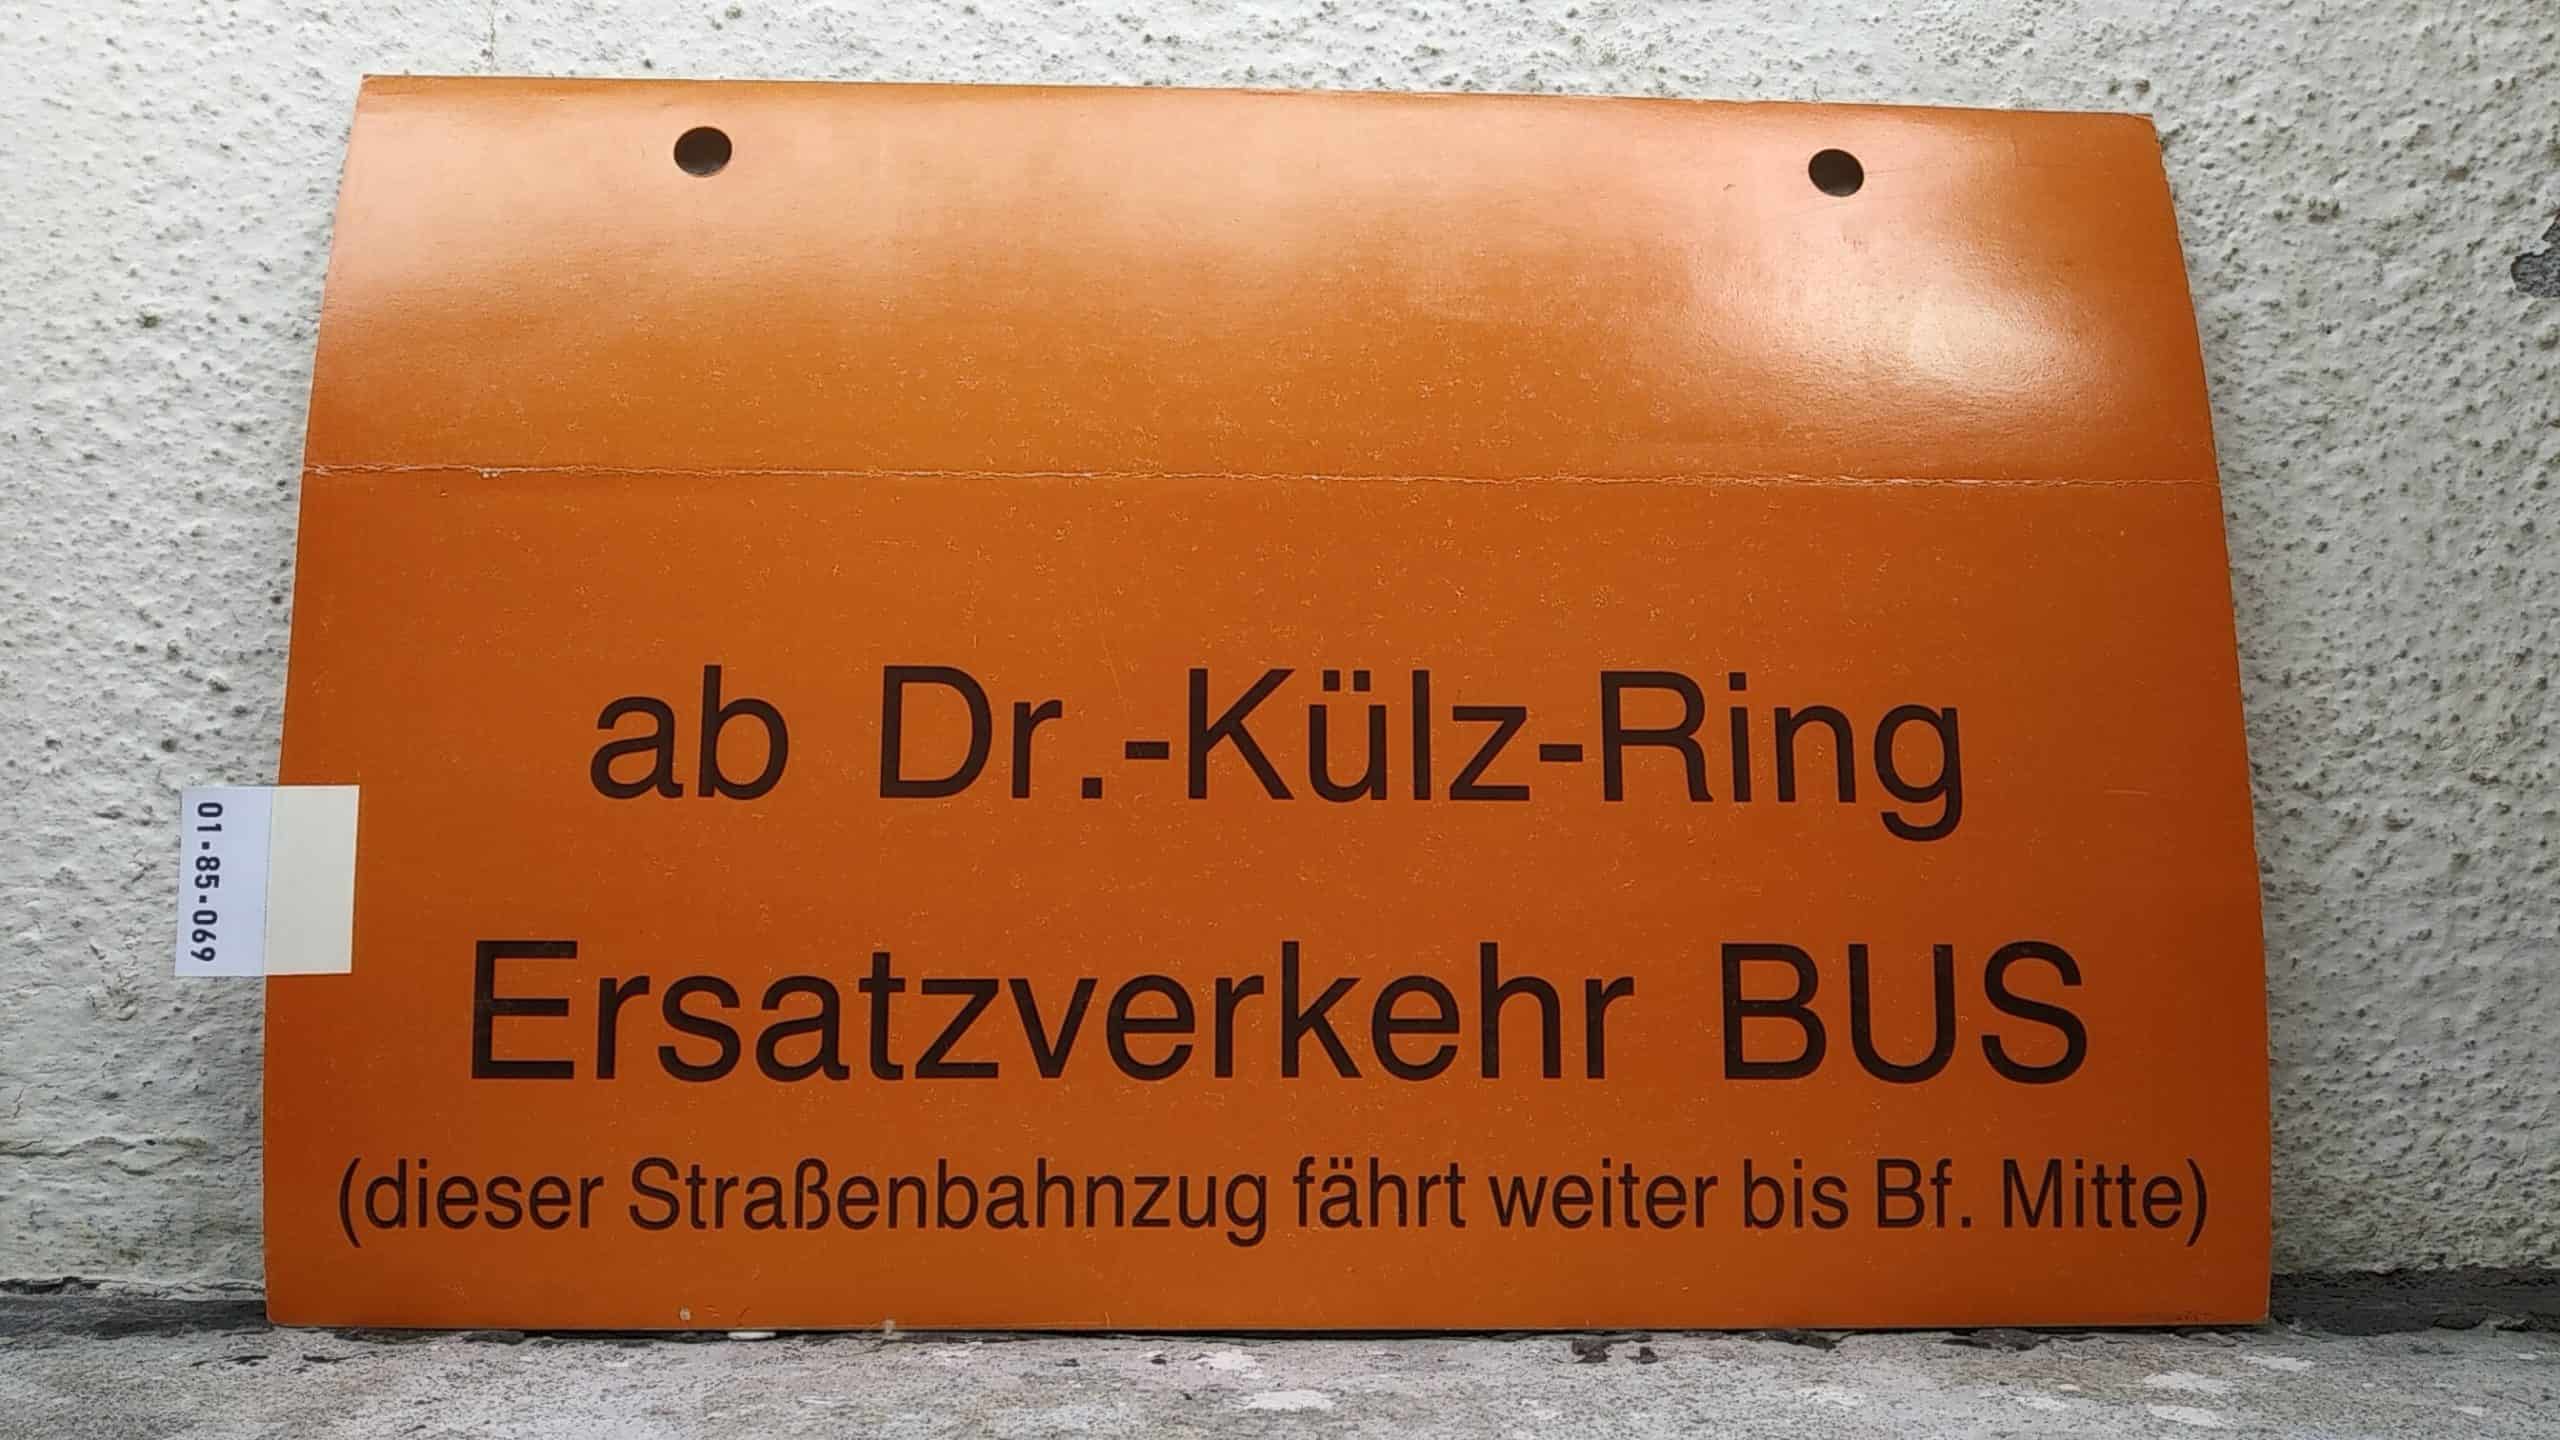 Ein seltenes Straßenbahn-Umleitungsschild aus Dresden: ab Dr.-Külz-Ring  Ersatzverkehr BUS (dieser Straßenbahnzug fährt weiter bis Bf. Mitte)